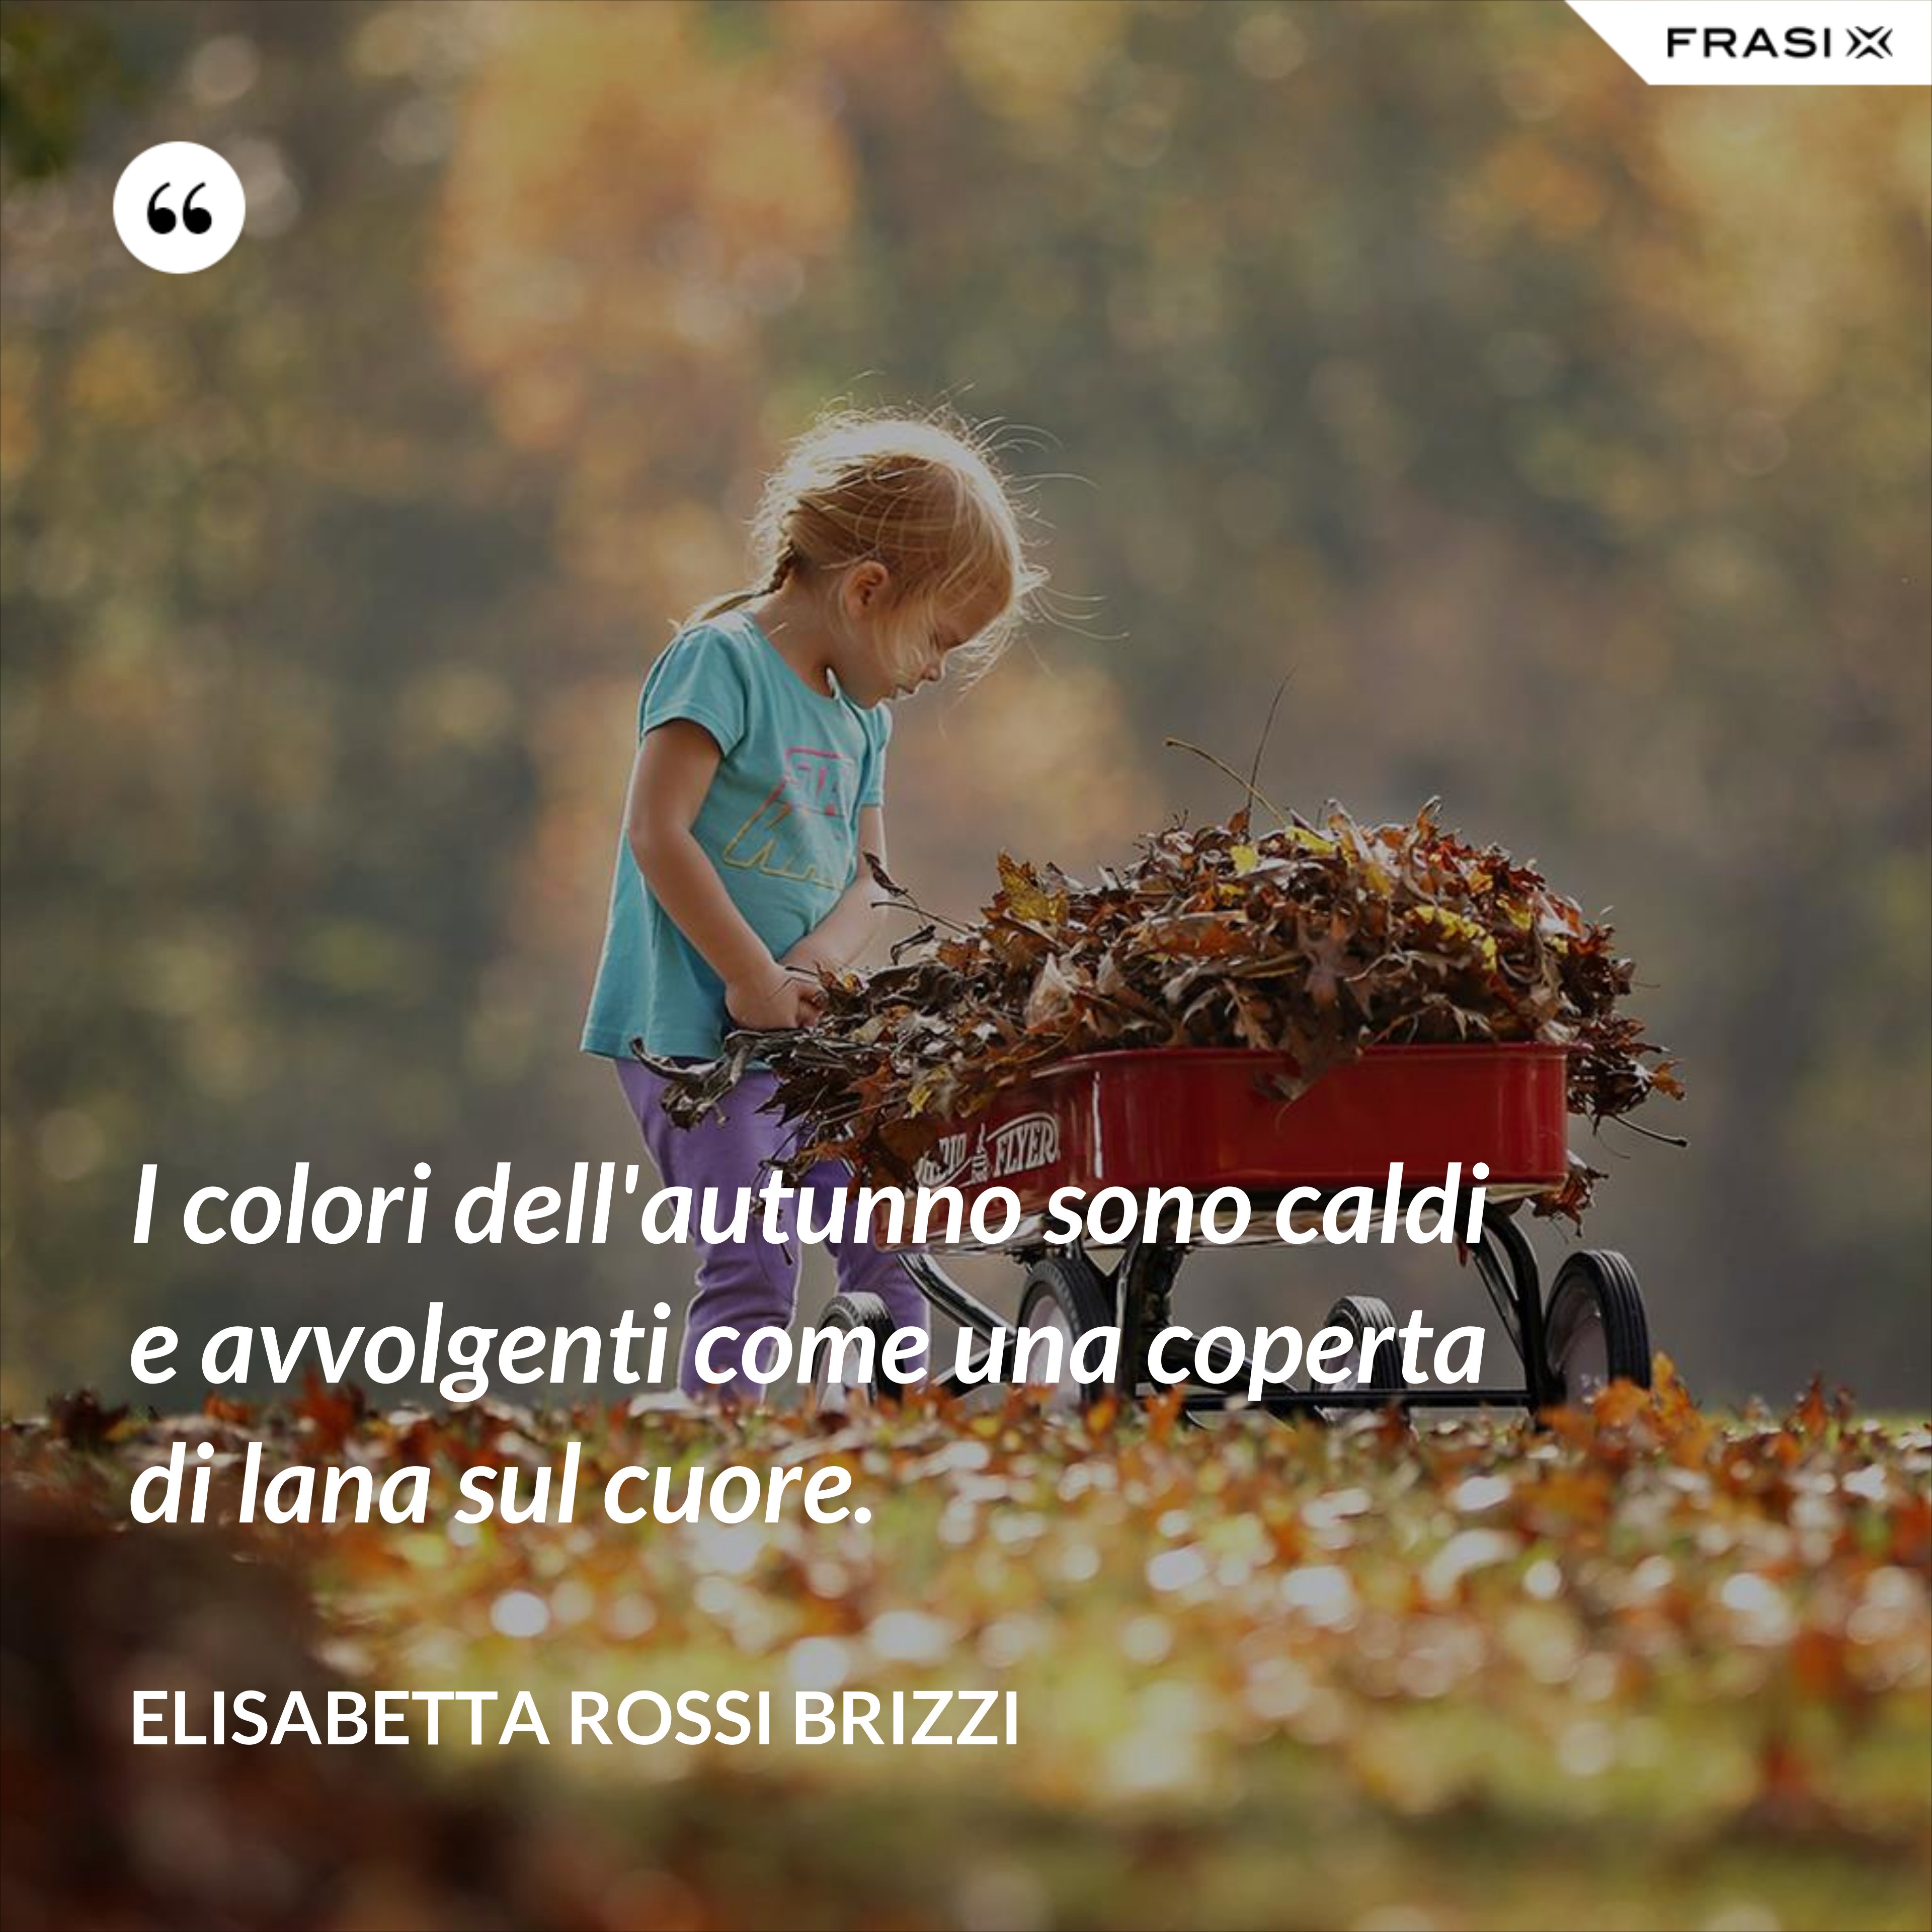 I colori dell'autunno sono caldi e avvolgenti come una coperta di lana sul cuore. - Elisabetta Rossi Brizzi